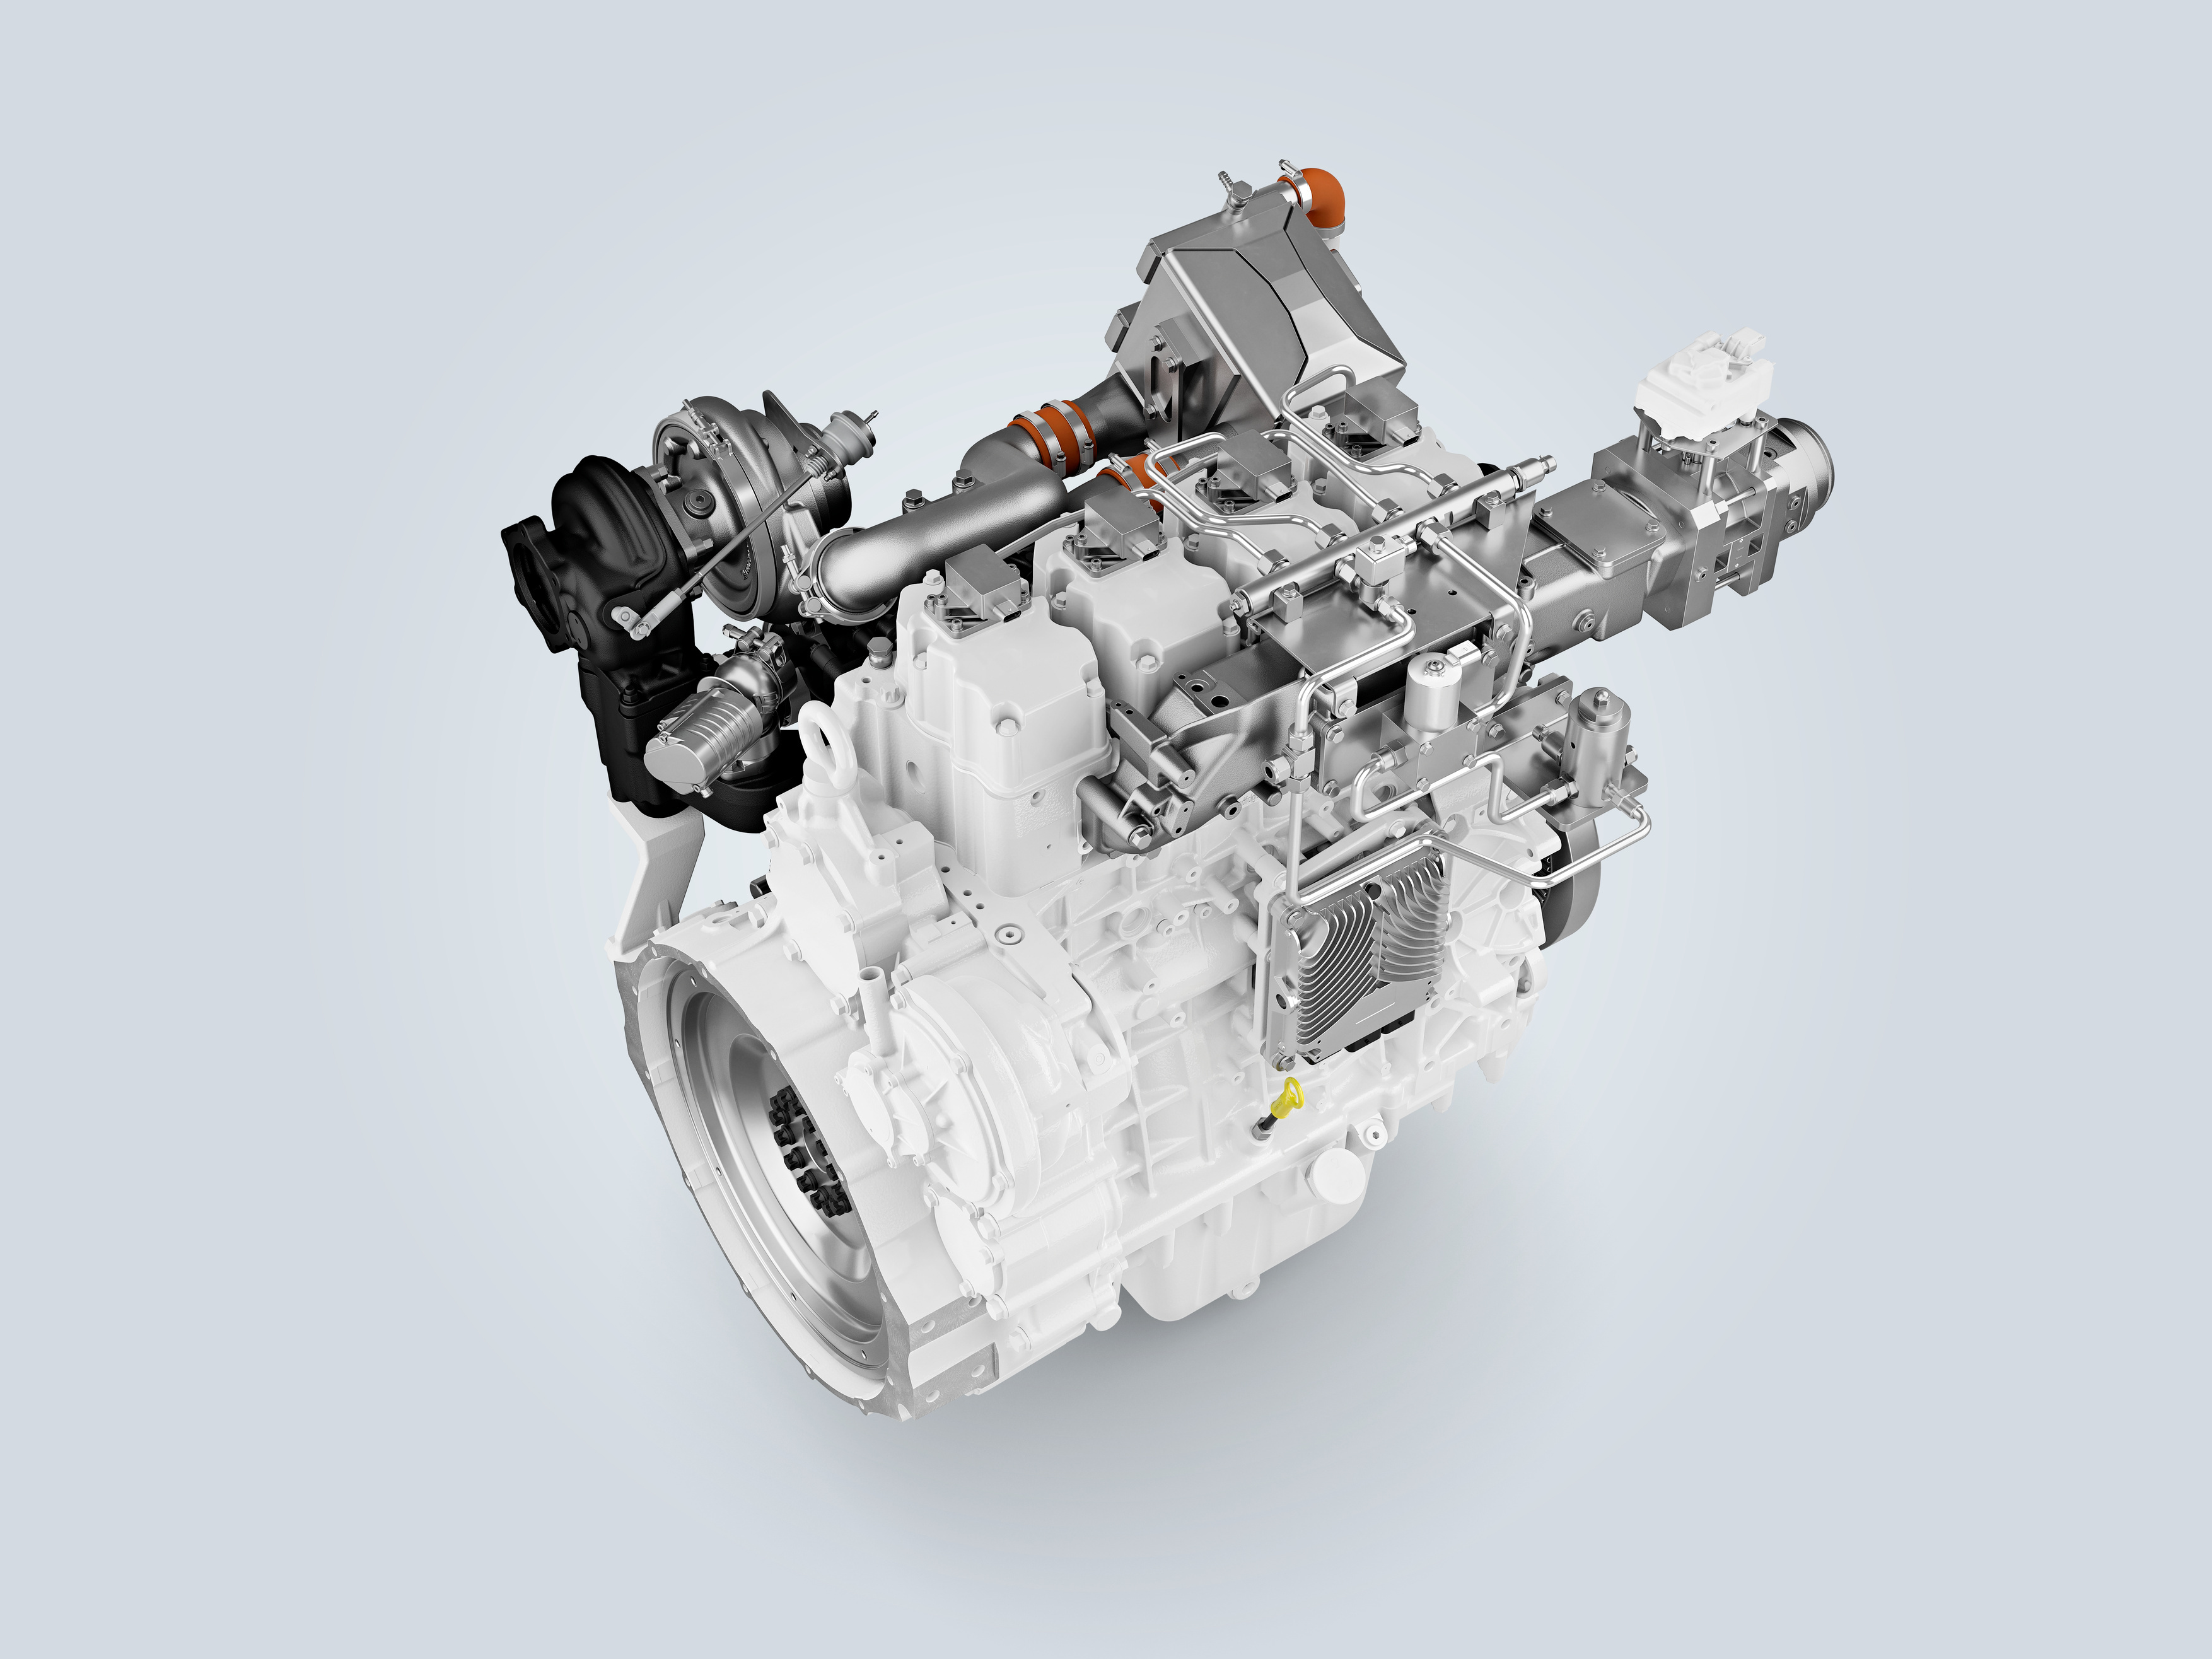 Liebherr d964 DI hydrogen engine in development